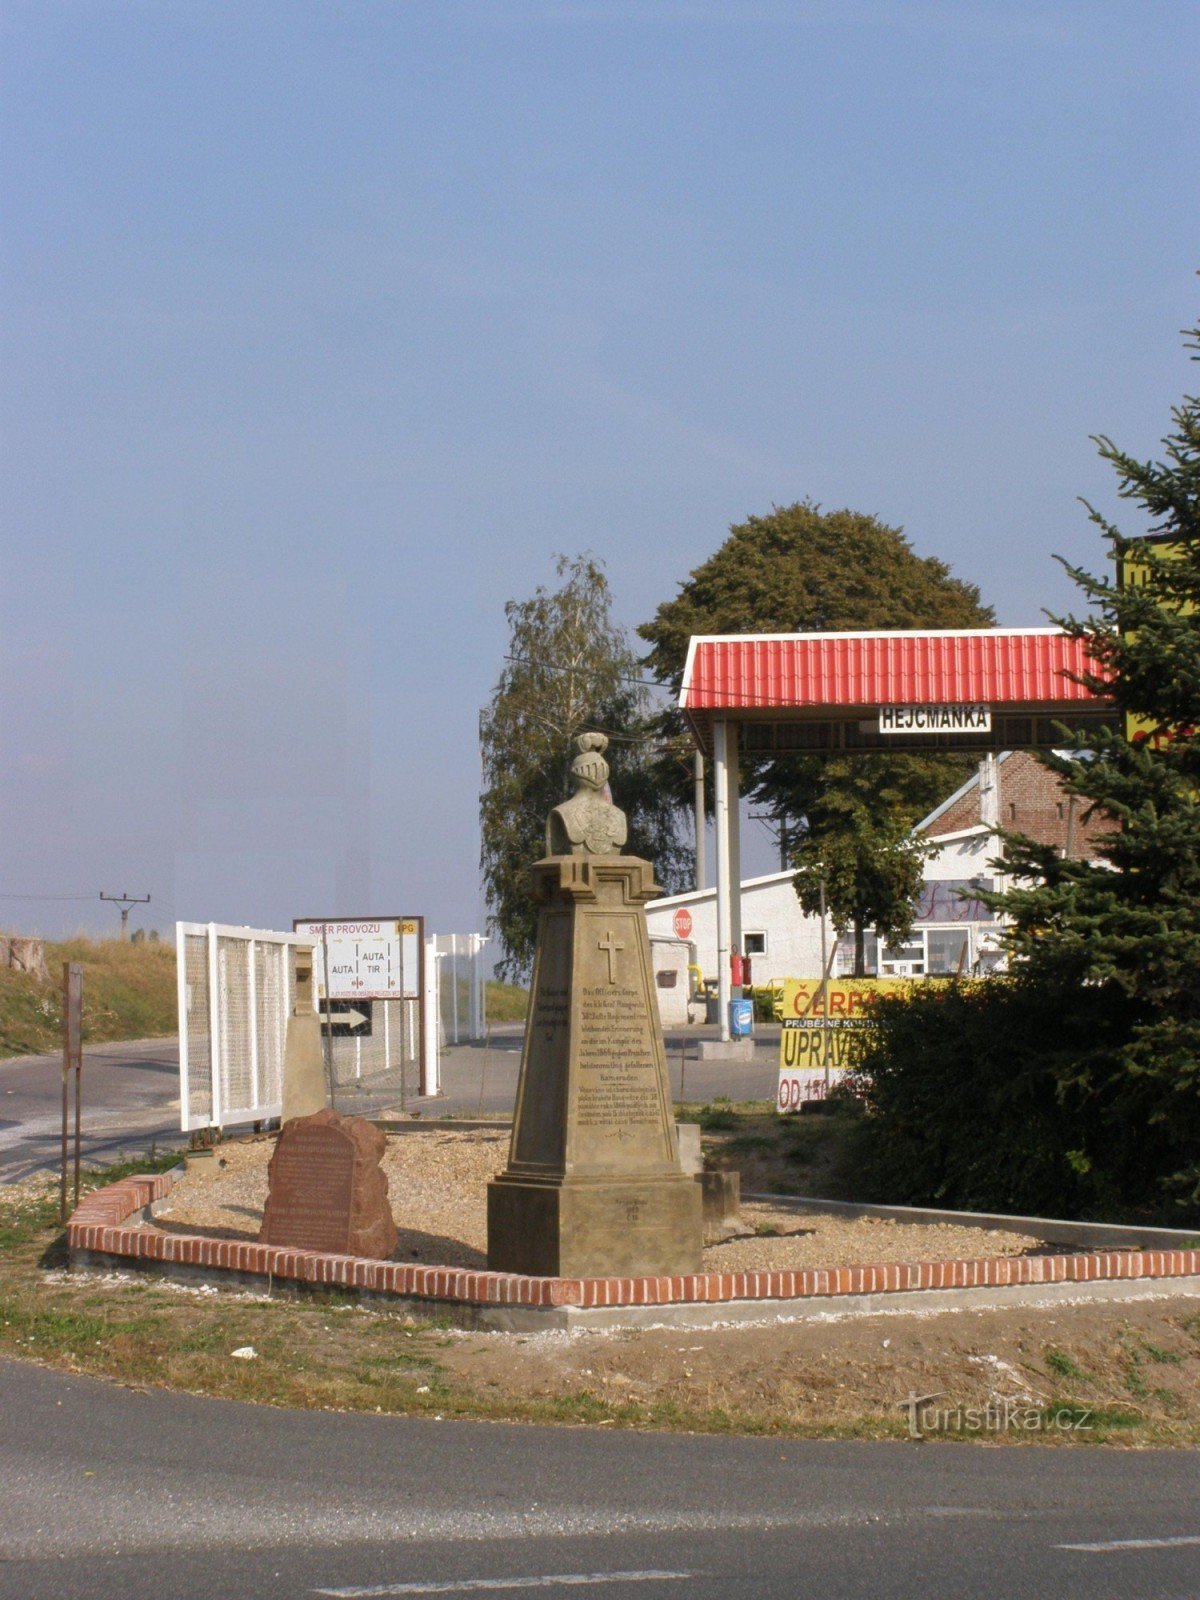 Rózběřice - Hejcmanka - tượng đài trận chiến năm 1866